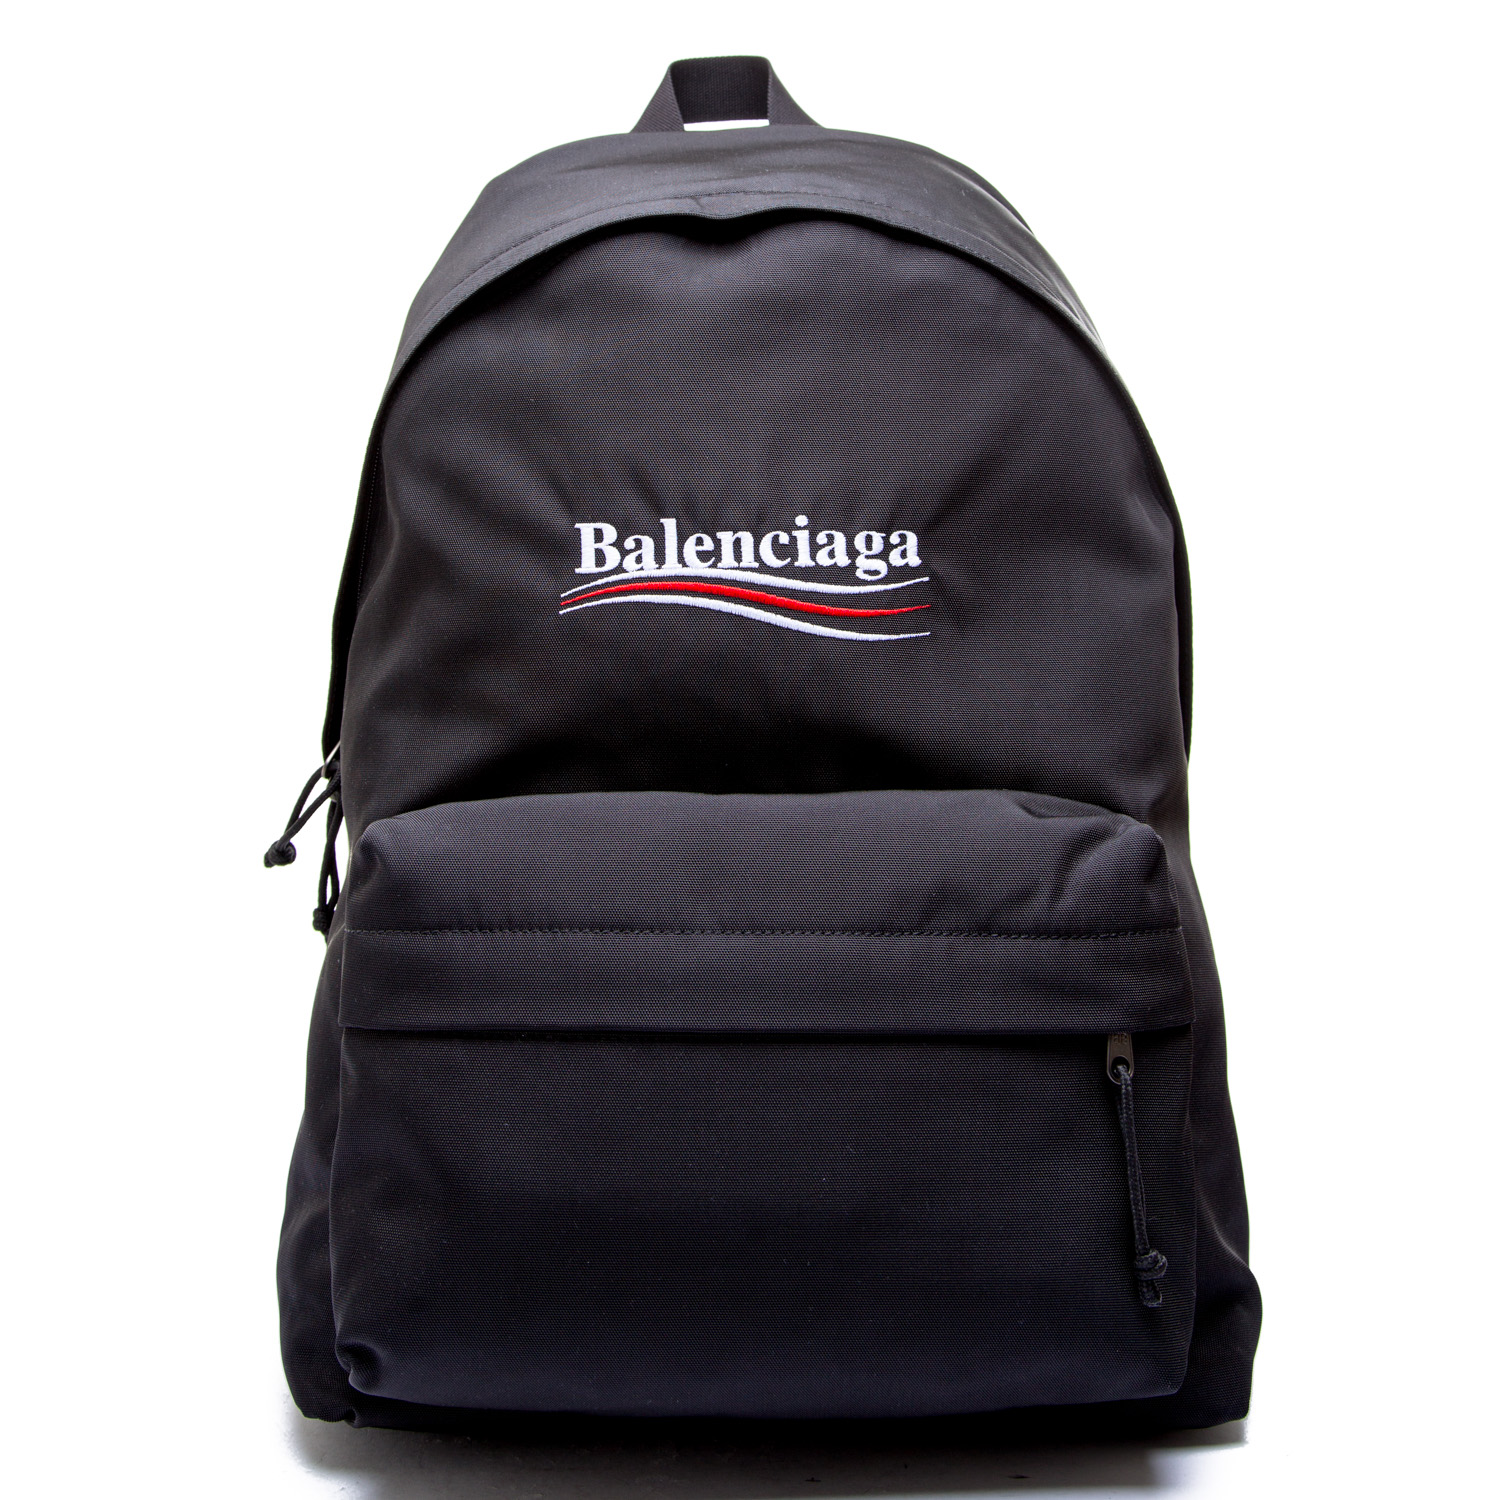 Balenciaga Backpack | Credomen